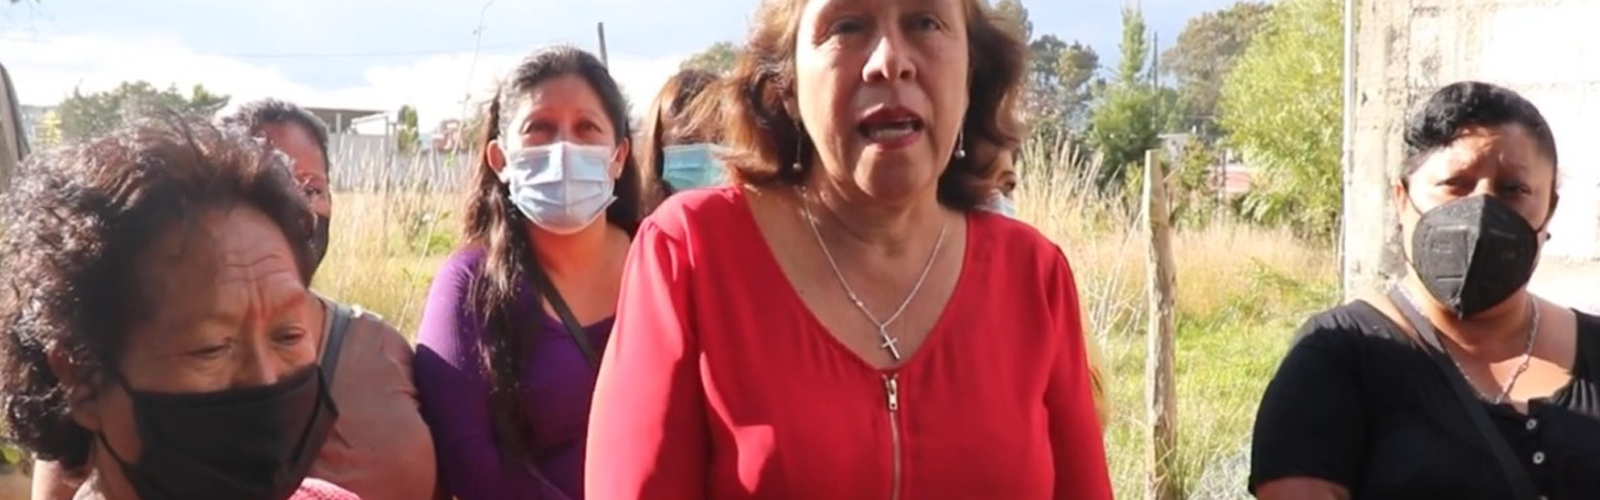 Mujeres de Huehuetenango podrían ir a prisión por oponerse a instalación de antena telefónica